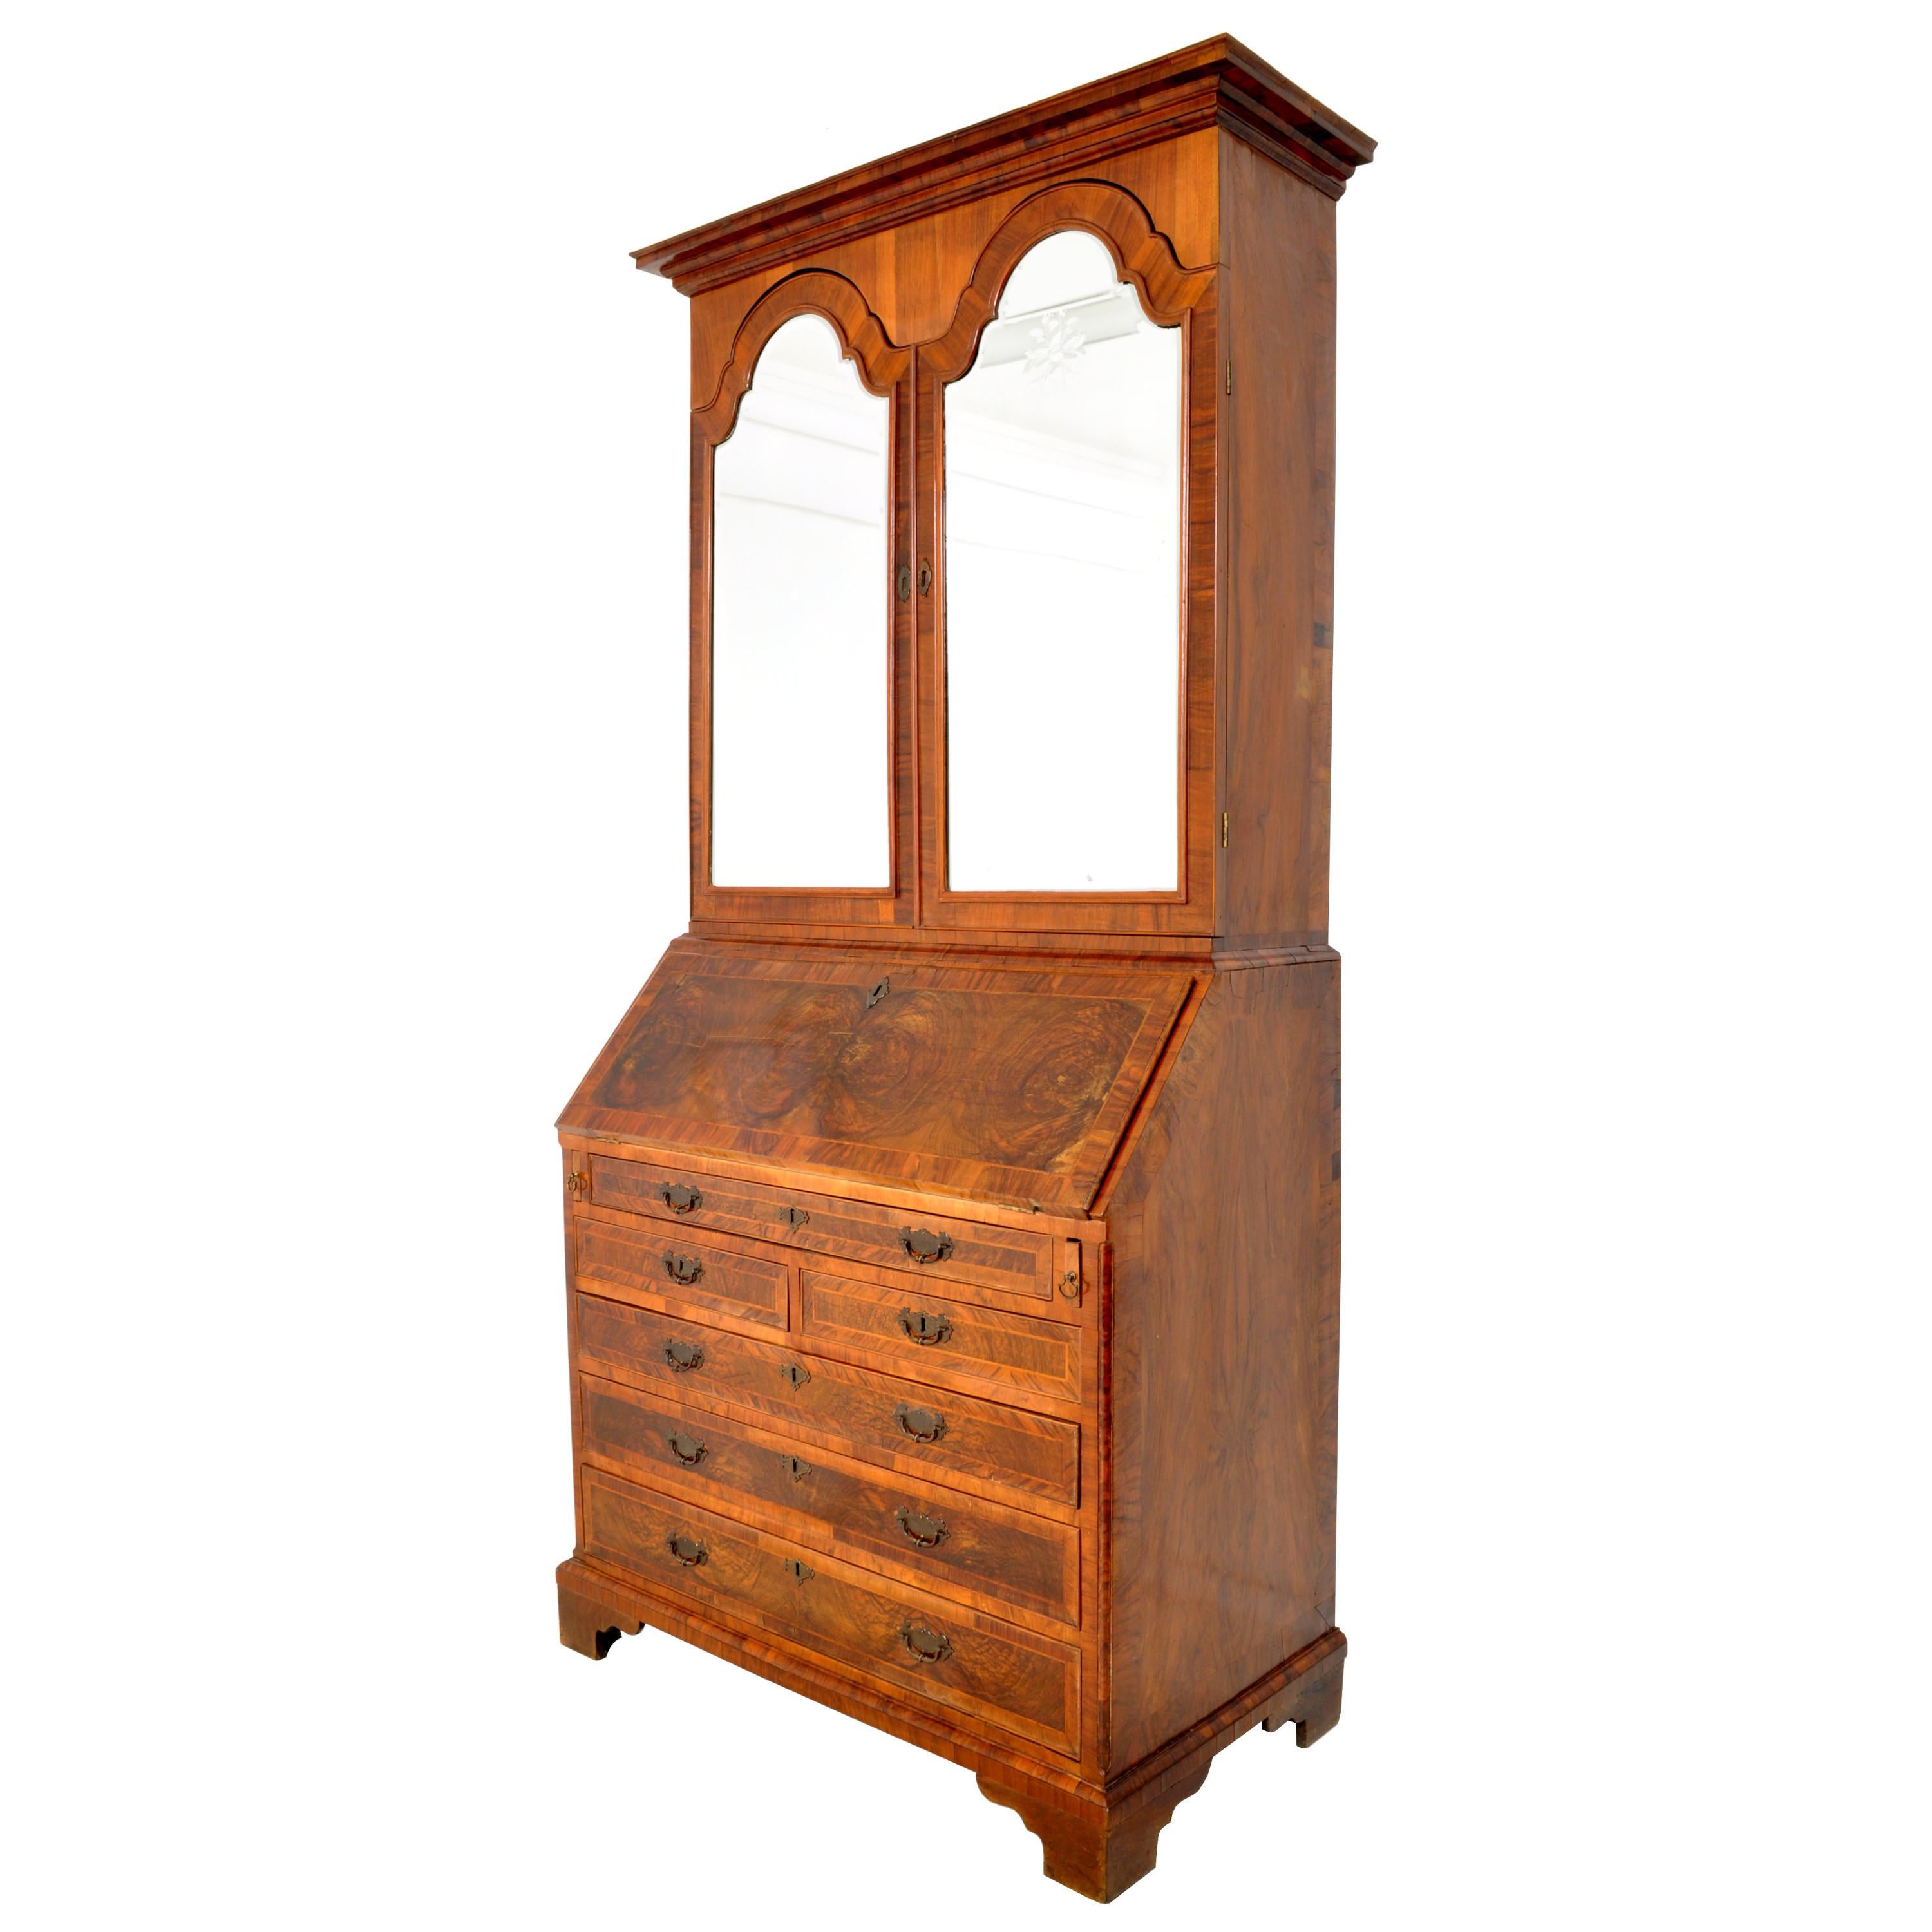 English Antique Georgian George II Figured Walnut Bookcase Bureau Secretary Desk, 1750 For Sale